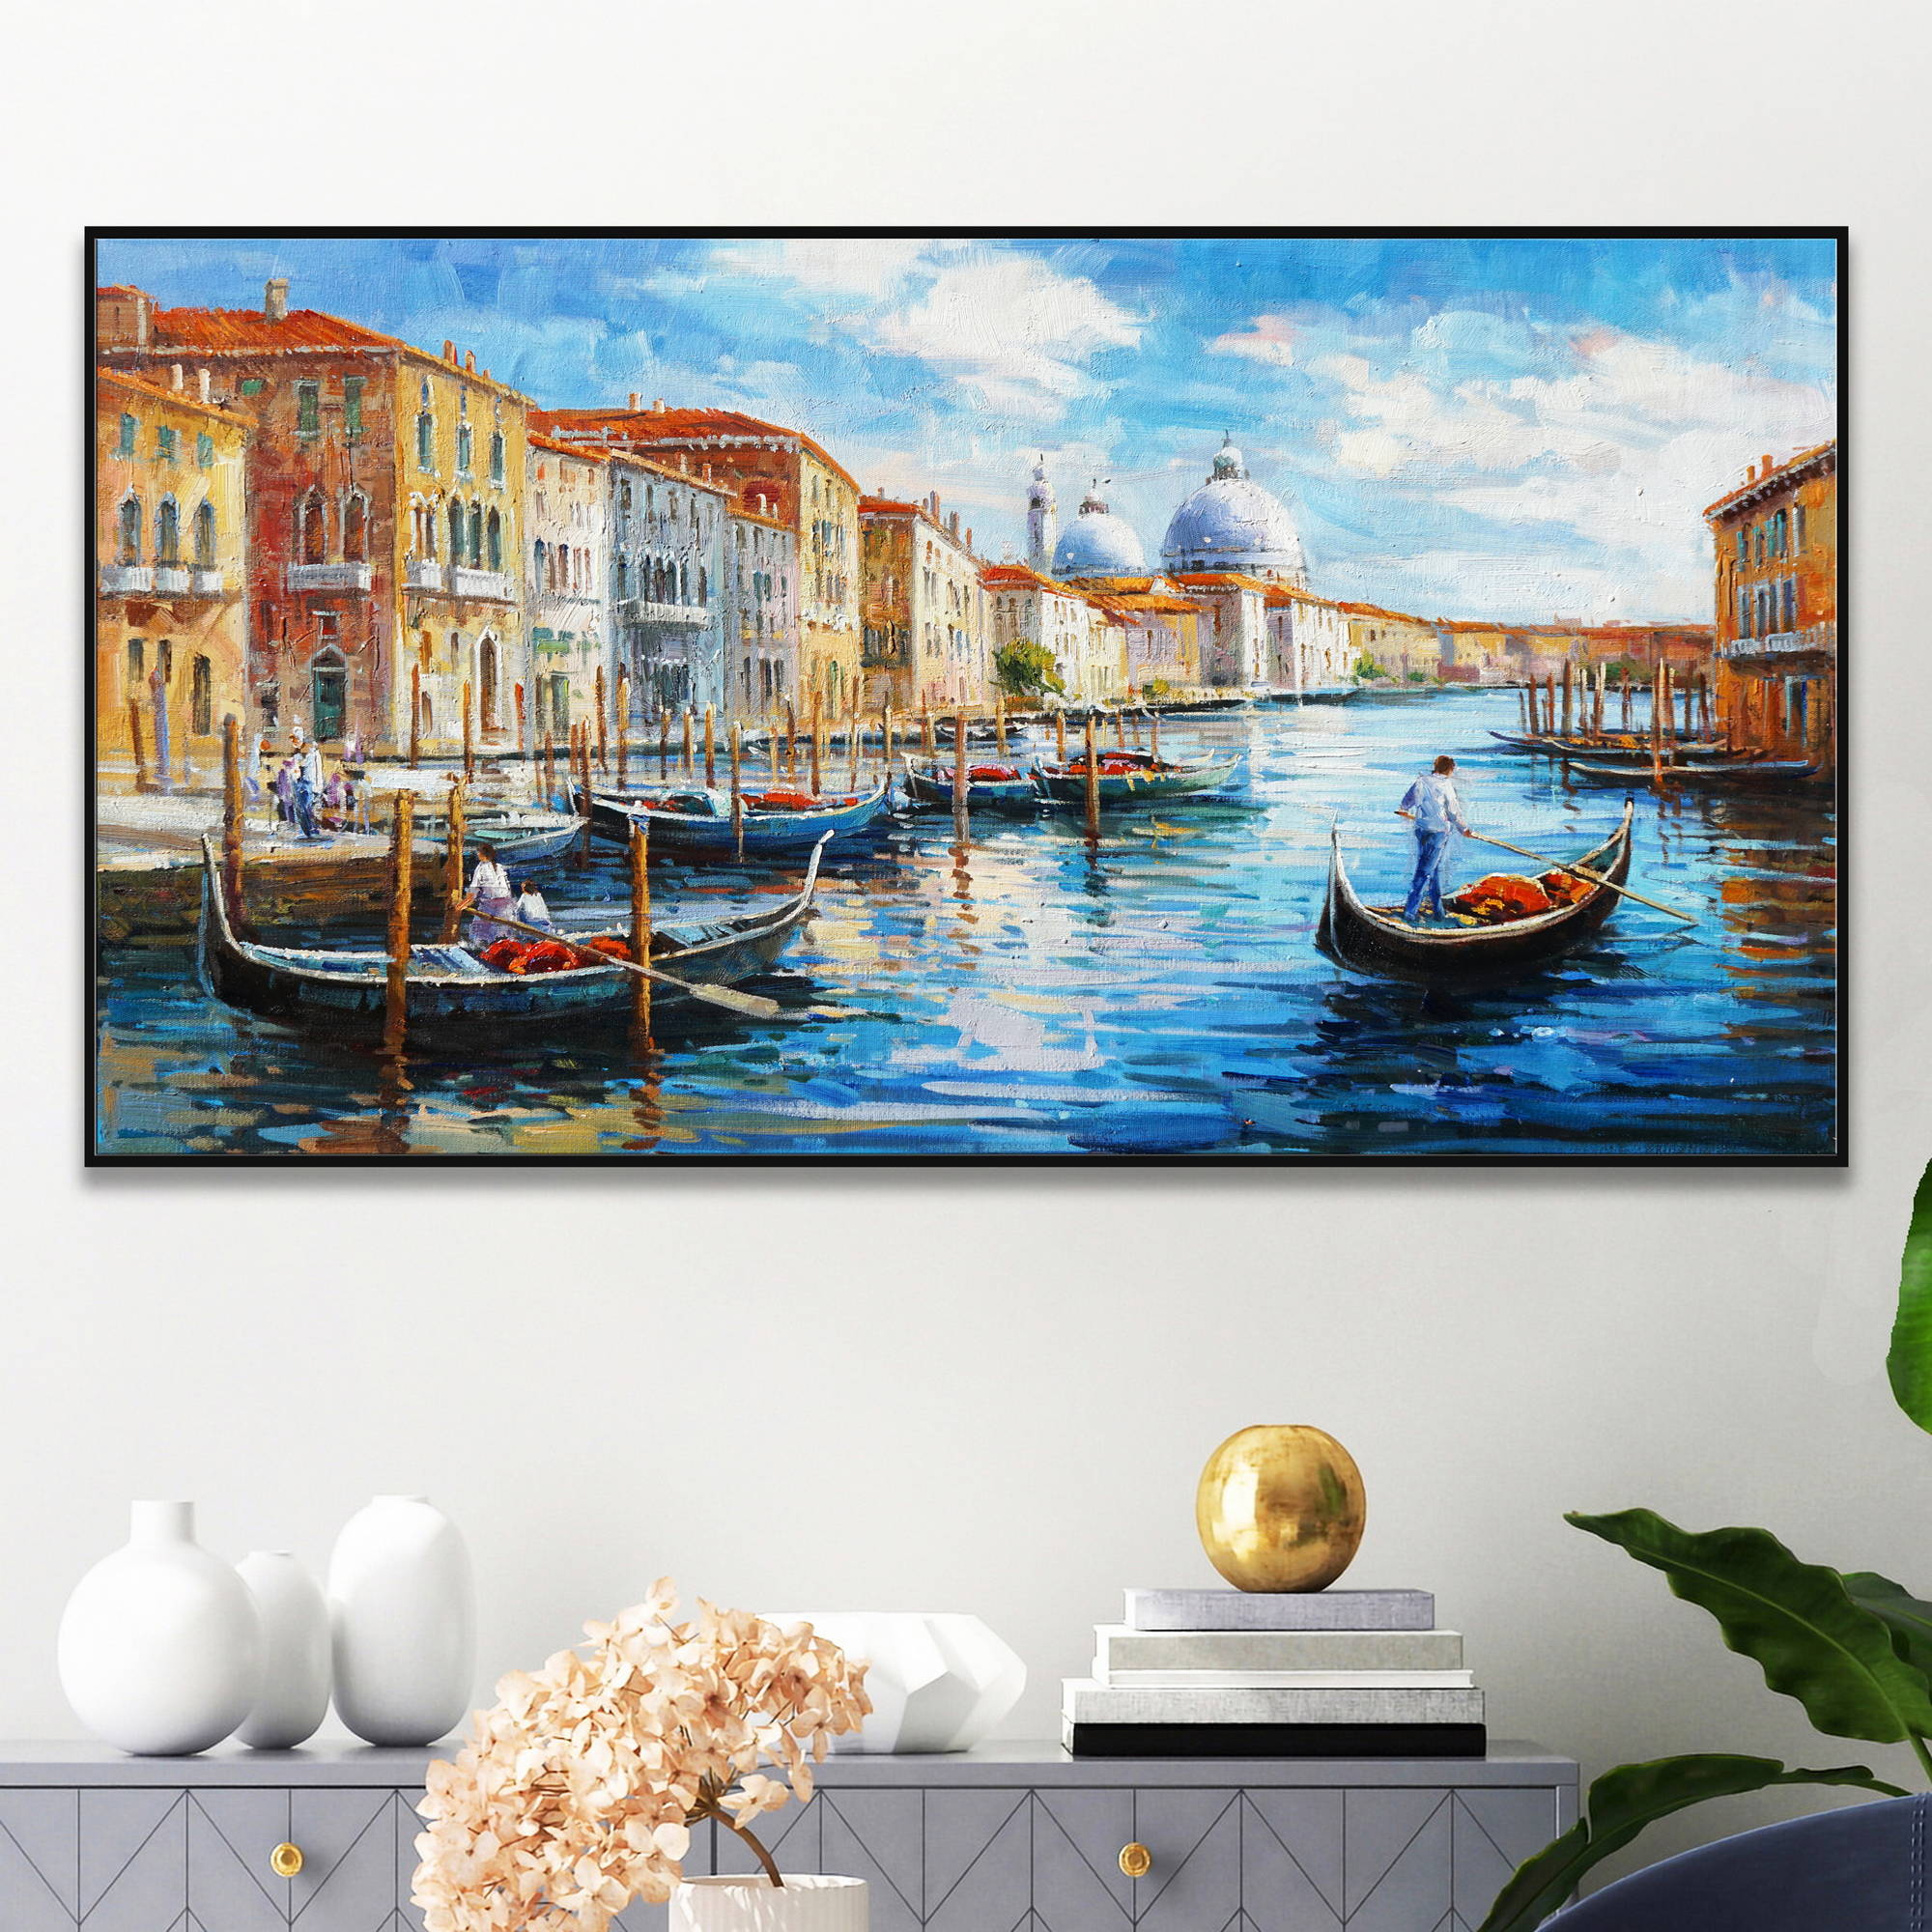 Pittura a olio di Venezia con gondole e architettura classica.